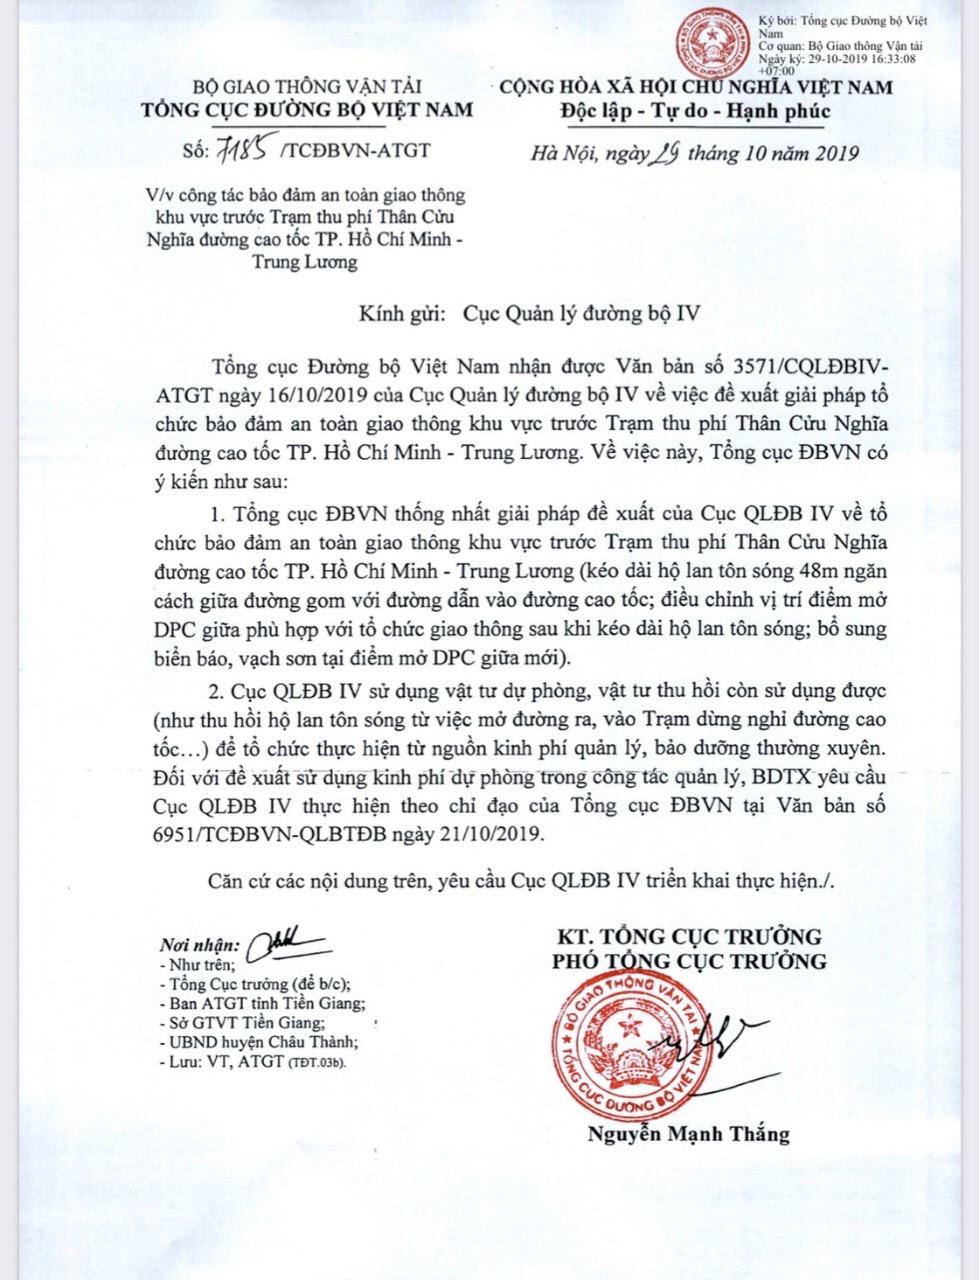 Văn bản số 7185/TCĐBVN- ATGT về việc công tác bảo đảm an toàn giao thông khu vực trước Trạm thu phí Thân Cửu Nghĩa đường cao tốc TP. Hồ Chí Minh - Trung Lương của Tổng cục đường bộ Việt Nam